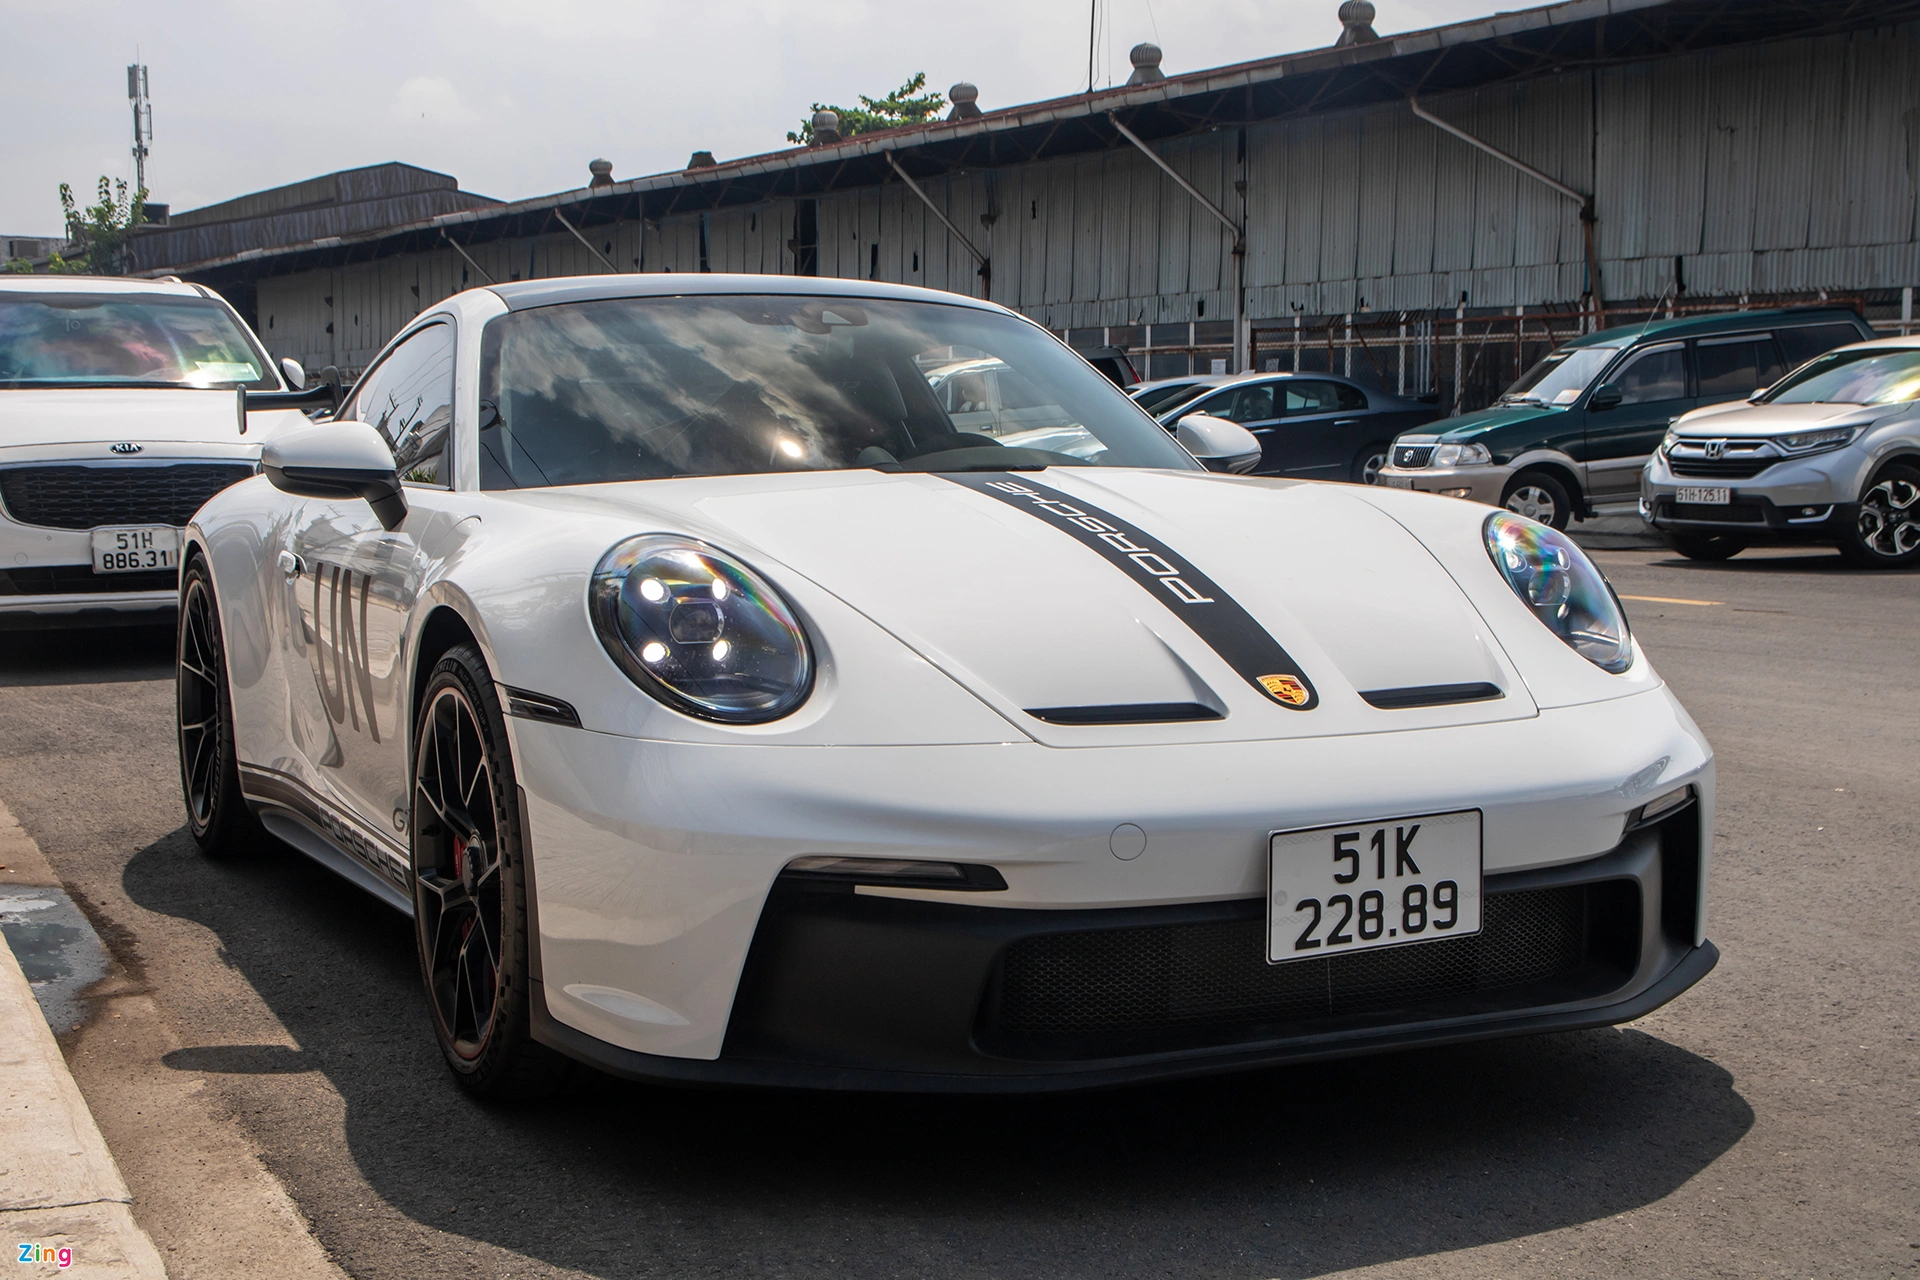 Porsche là thương hiệu chiếm đa số trong garage của ông Vũ với số lượng hơn 20 chiếc đủ chủng loại.